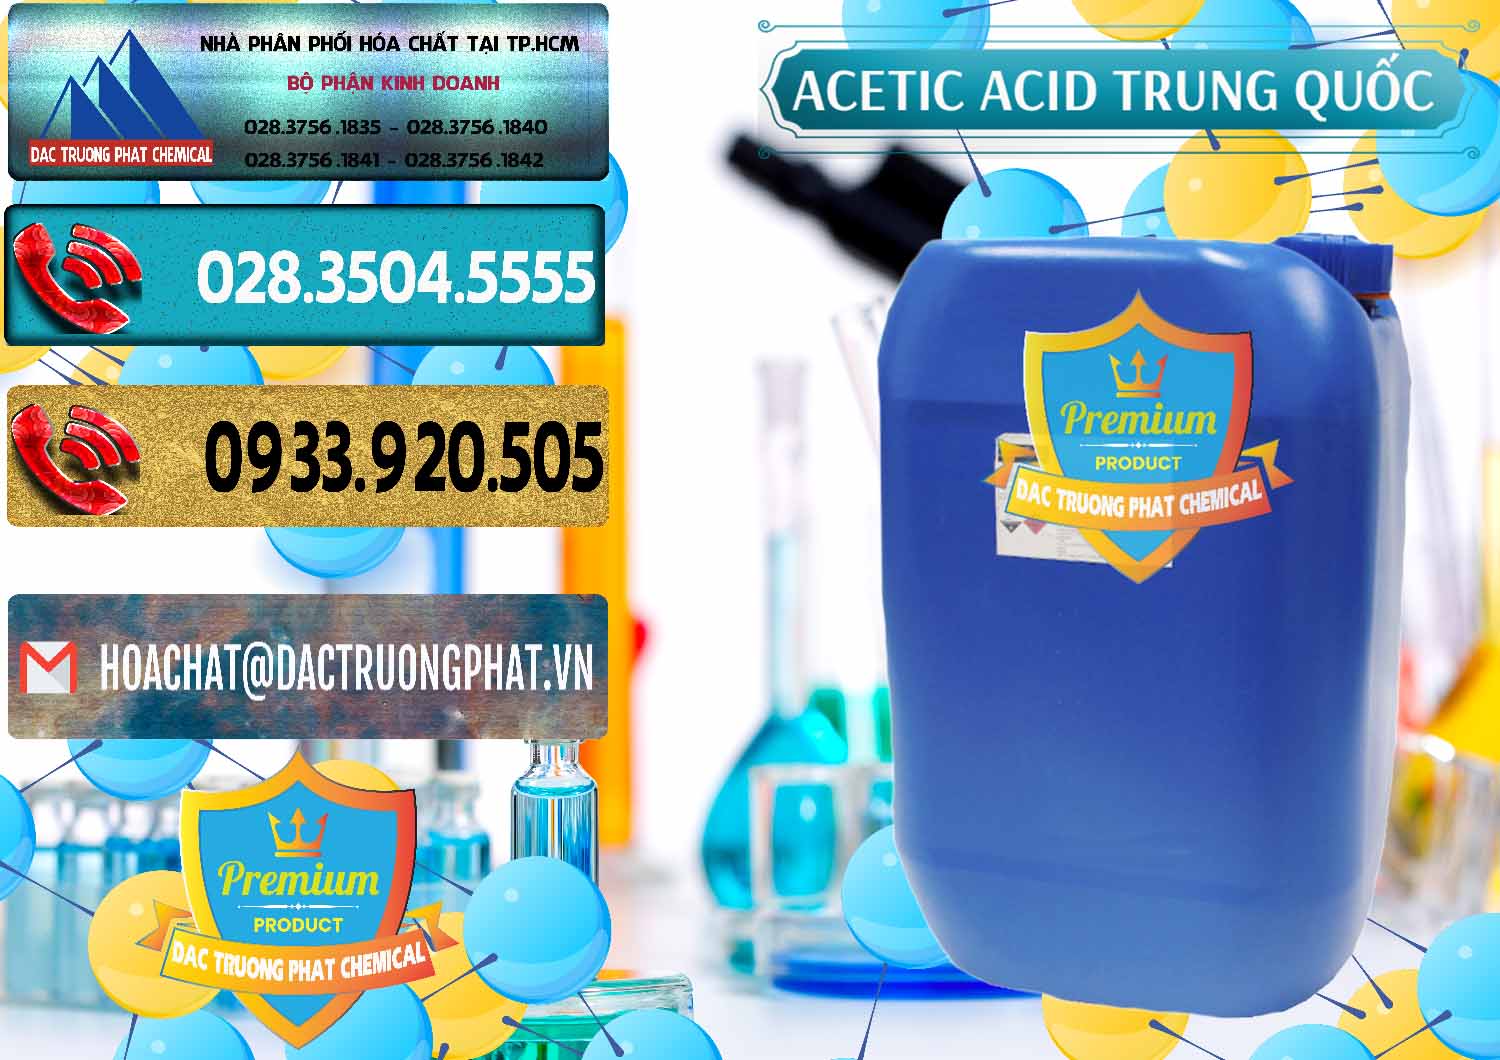 Nơi chuyên cung ứng & bán Acetic Acid – Axit Acetic Trung Quốc China - 0358 - Chuyên phân phối ( cung ứng ) hóa chất tại TP.HCM - hoachatdetnhuom.com